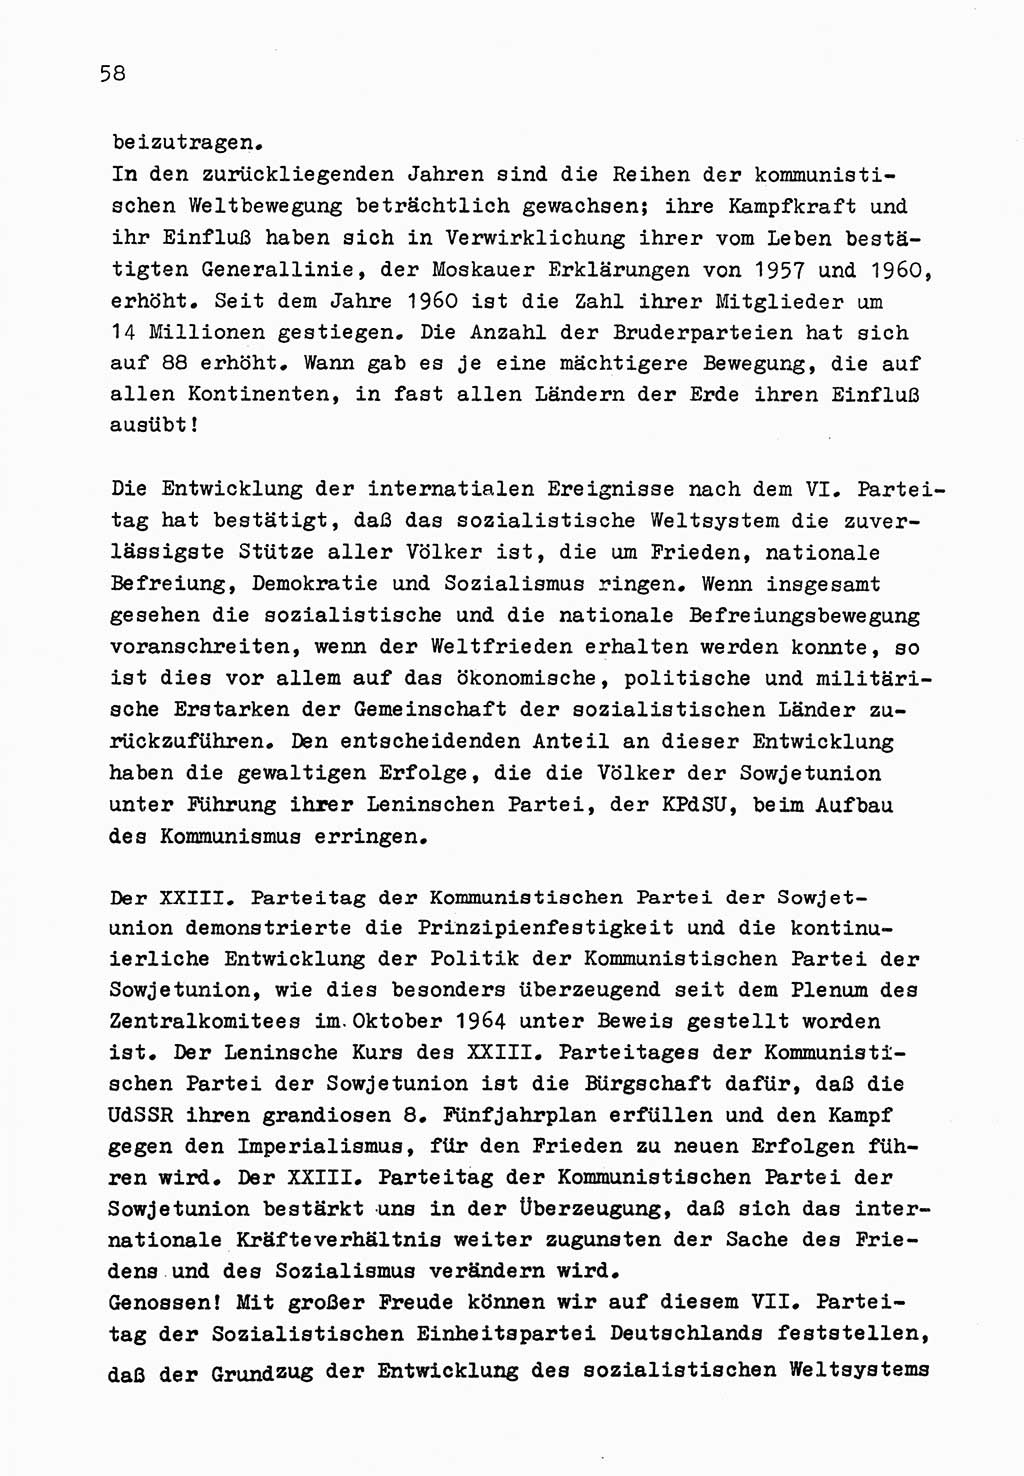 Zu Fragen der Parteiarbeit [Sozialistische Einheitspartei Deutschlands (SED) Deutsche Demokratische Republik (DDR)] 1979, Seite 58 (Fr. PA SED DDR 1979, S. 58)